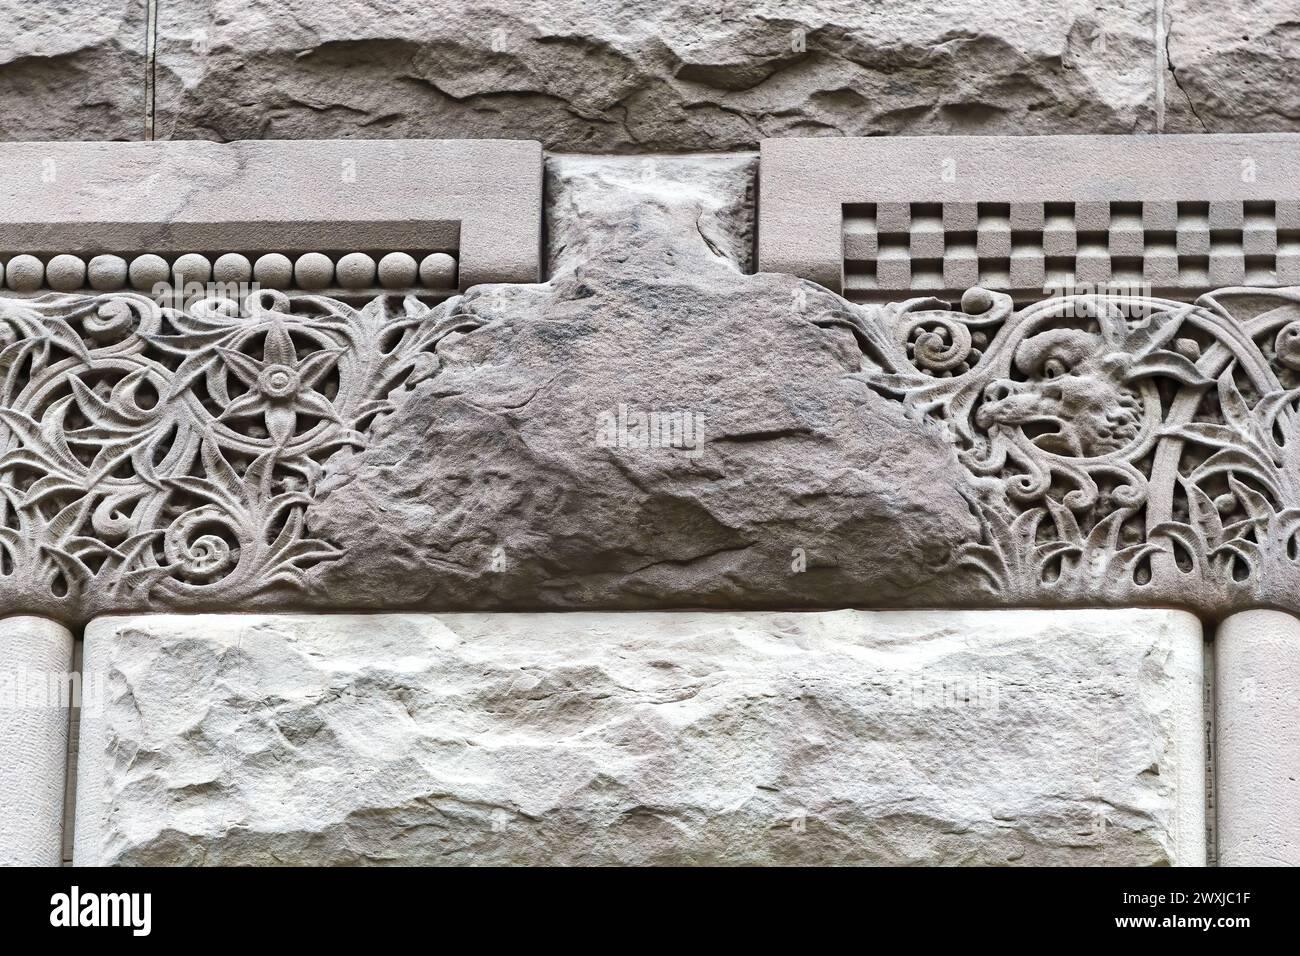 Caractéristiques architecturales coloniales ou détails dans l'ancien édifice de l'hôtel de ville (1898), Toronto, Canada. Partie d'une série. Banque D'Images